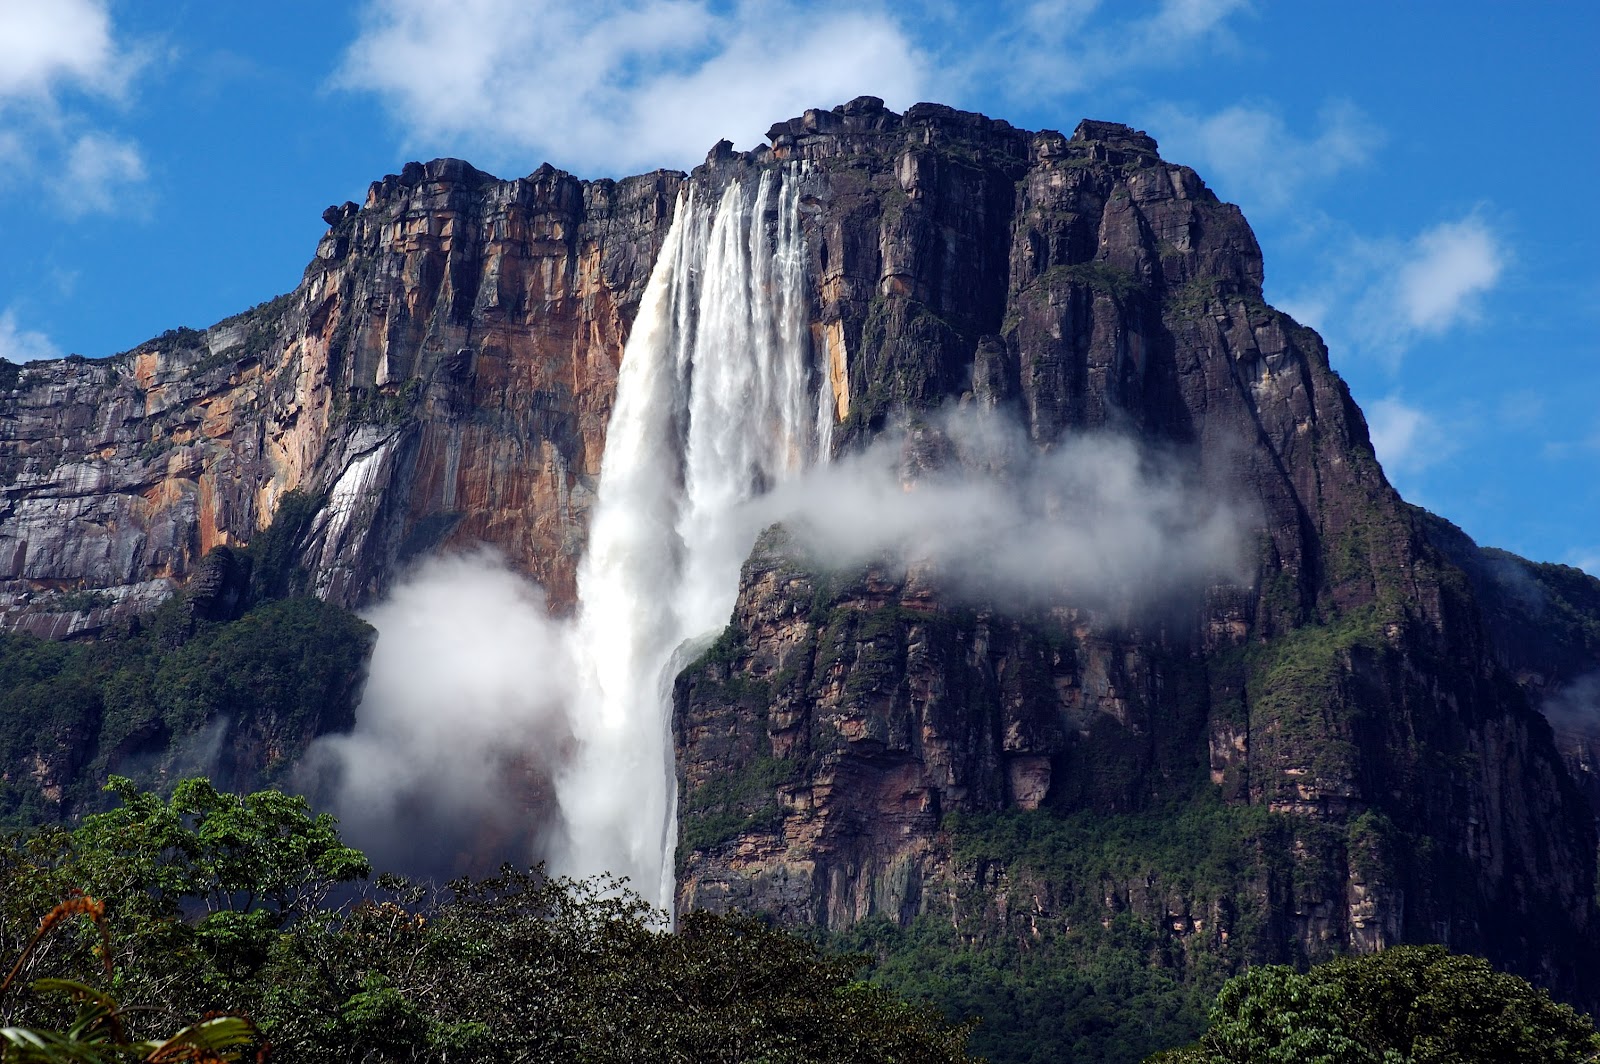 Top 6 Tourist Attractions In Venezuela